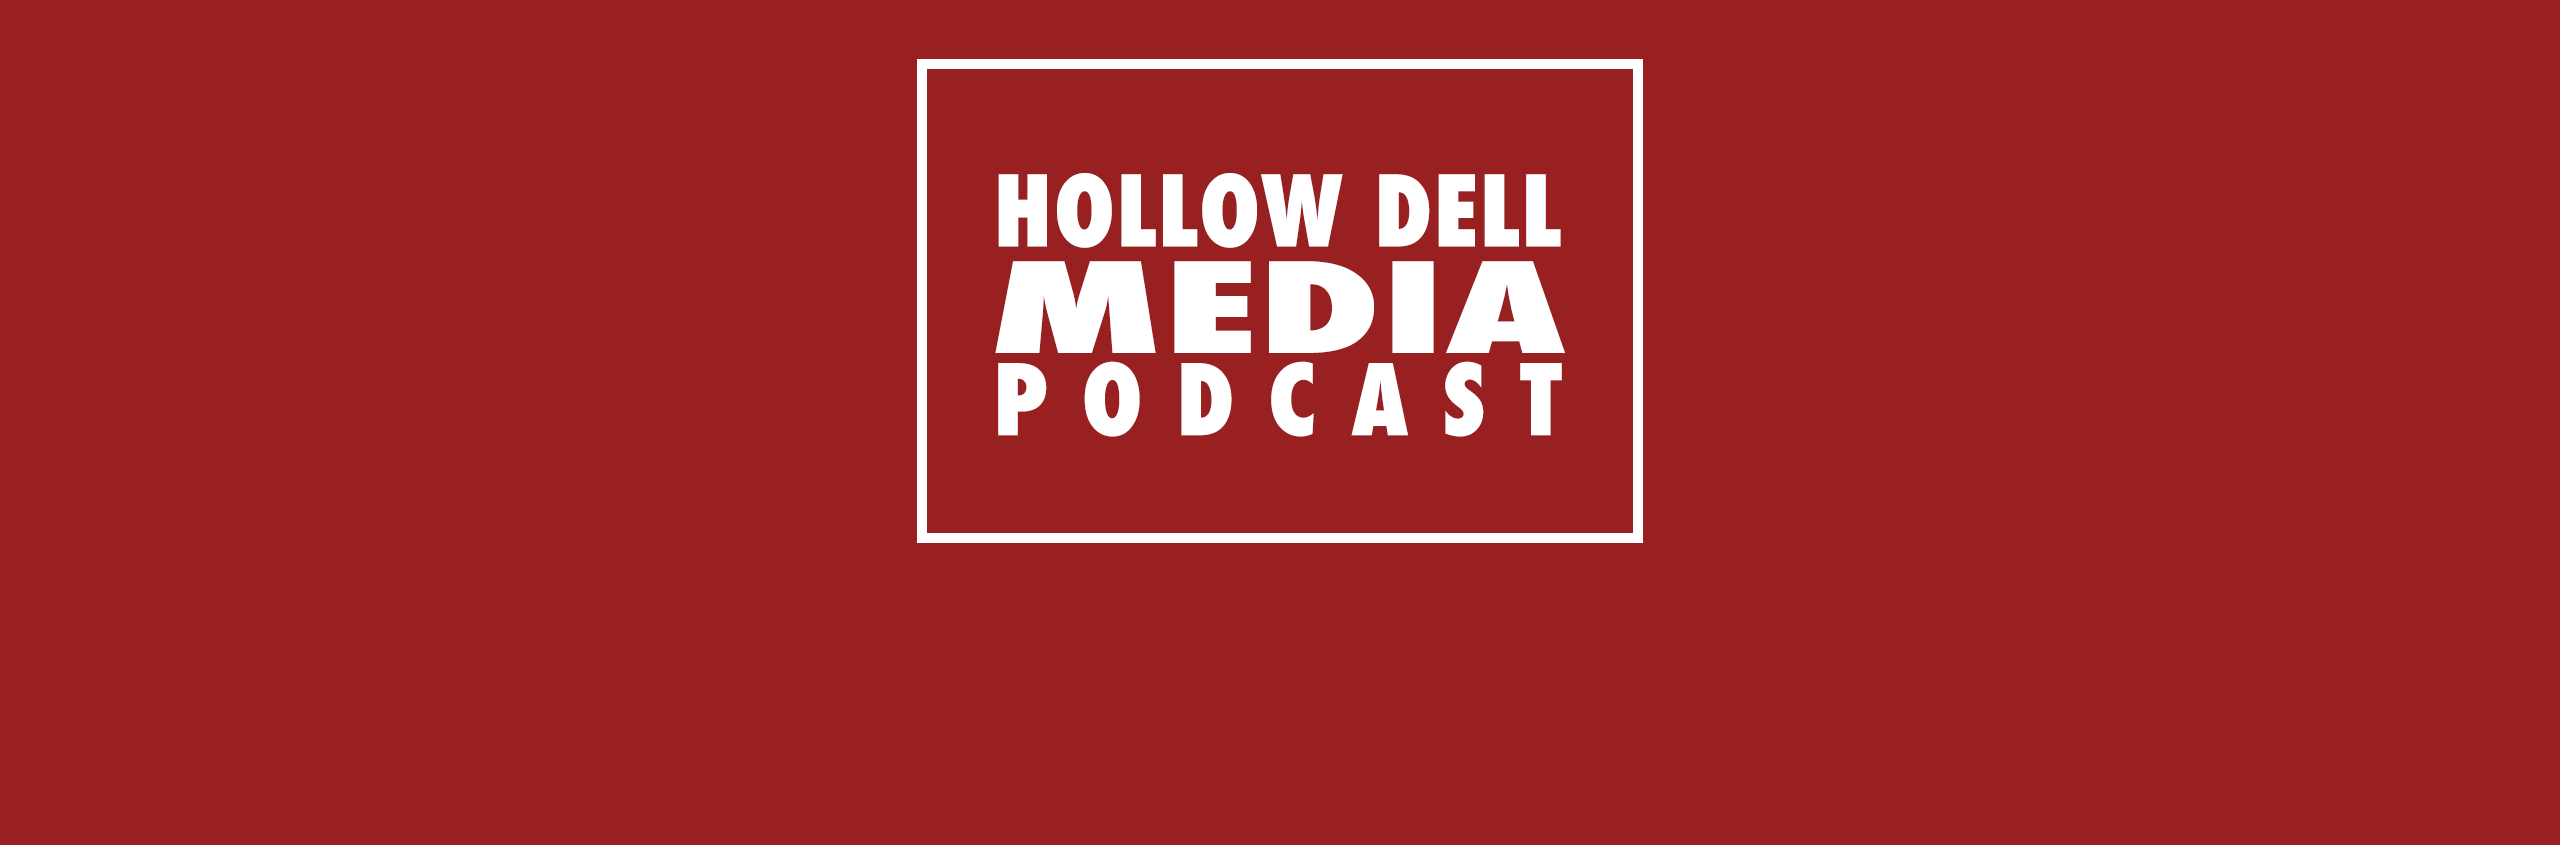 Hollow Dell Media